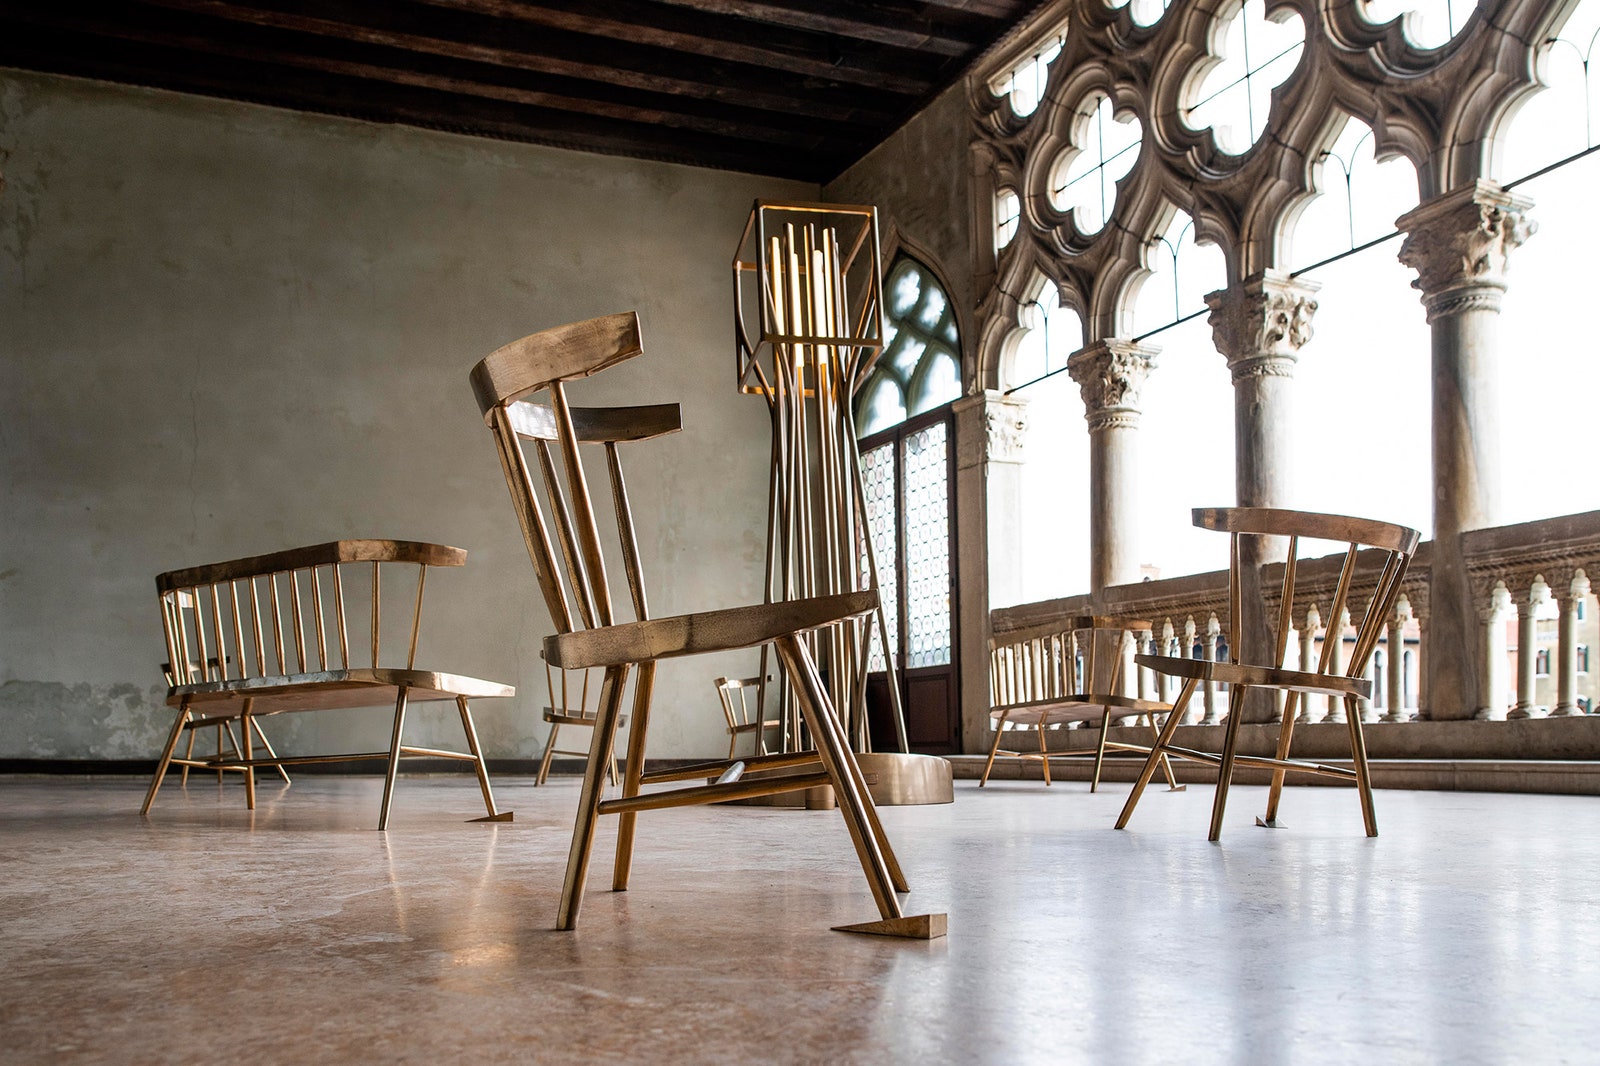 Ставка на экологию выставка мебели от Вирджила Абло на Венецианской биеннале 2019